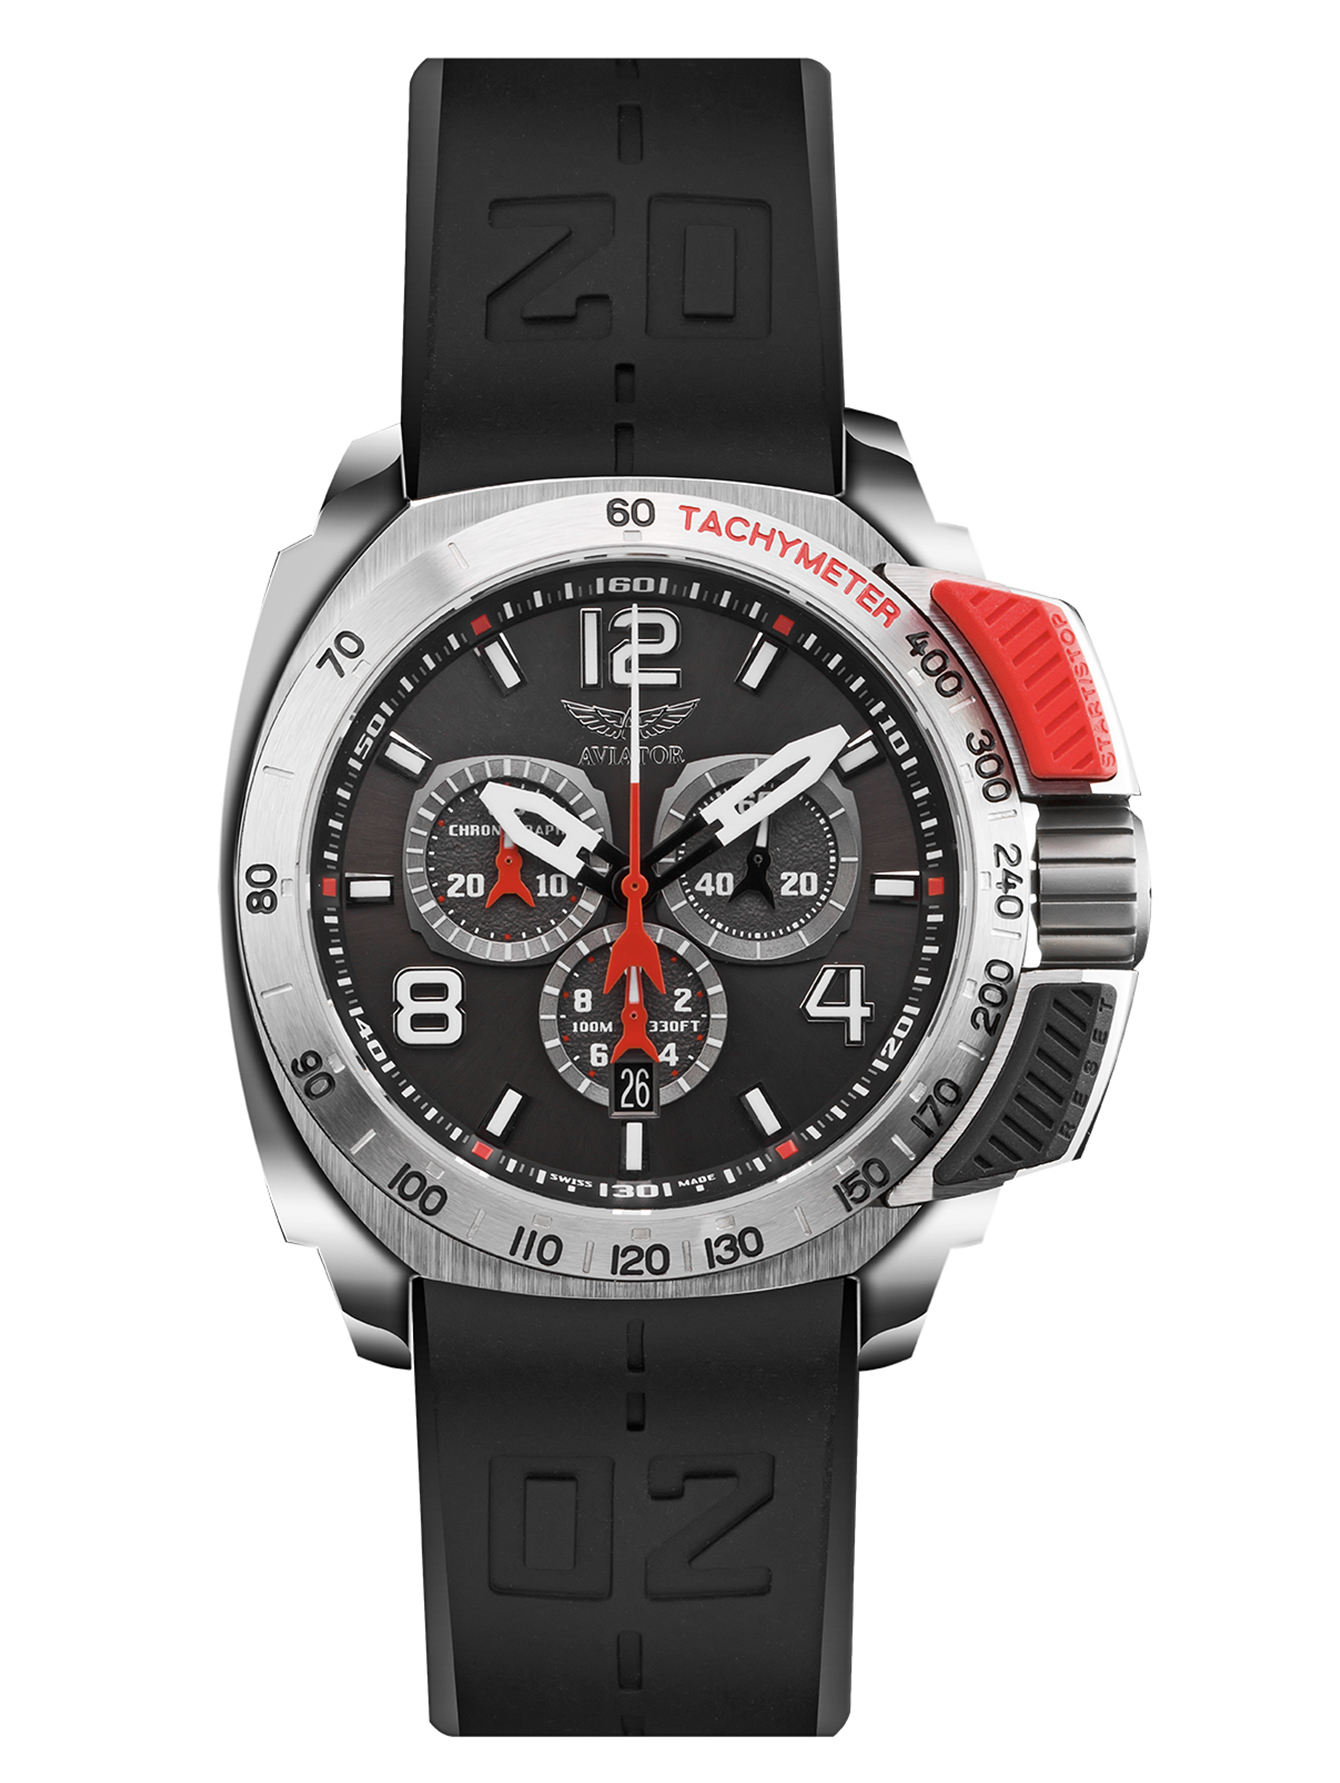 Часы Aviator P.2.15.0.089.6 Aviator - купить оригинал по выгодной цене в интернет-магазине Sublime